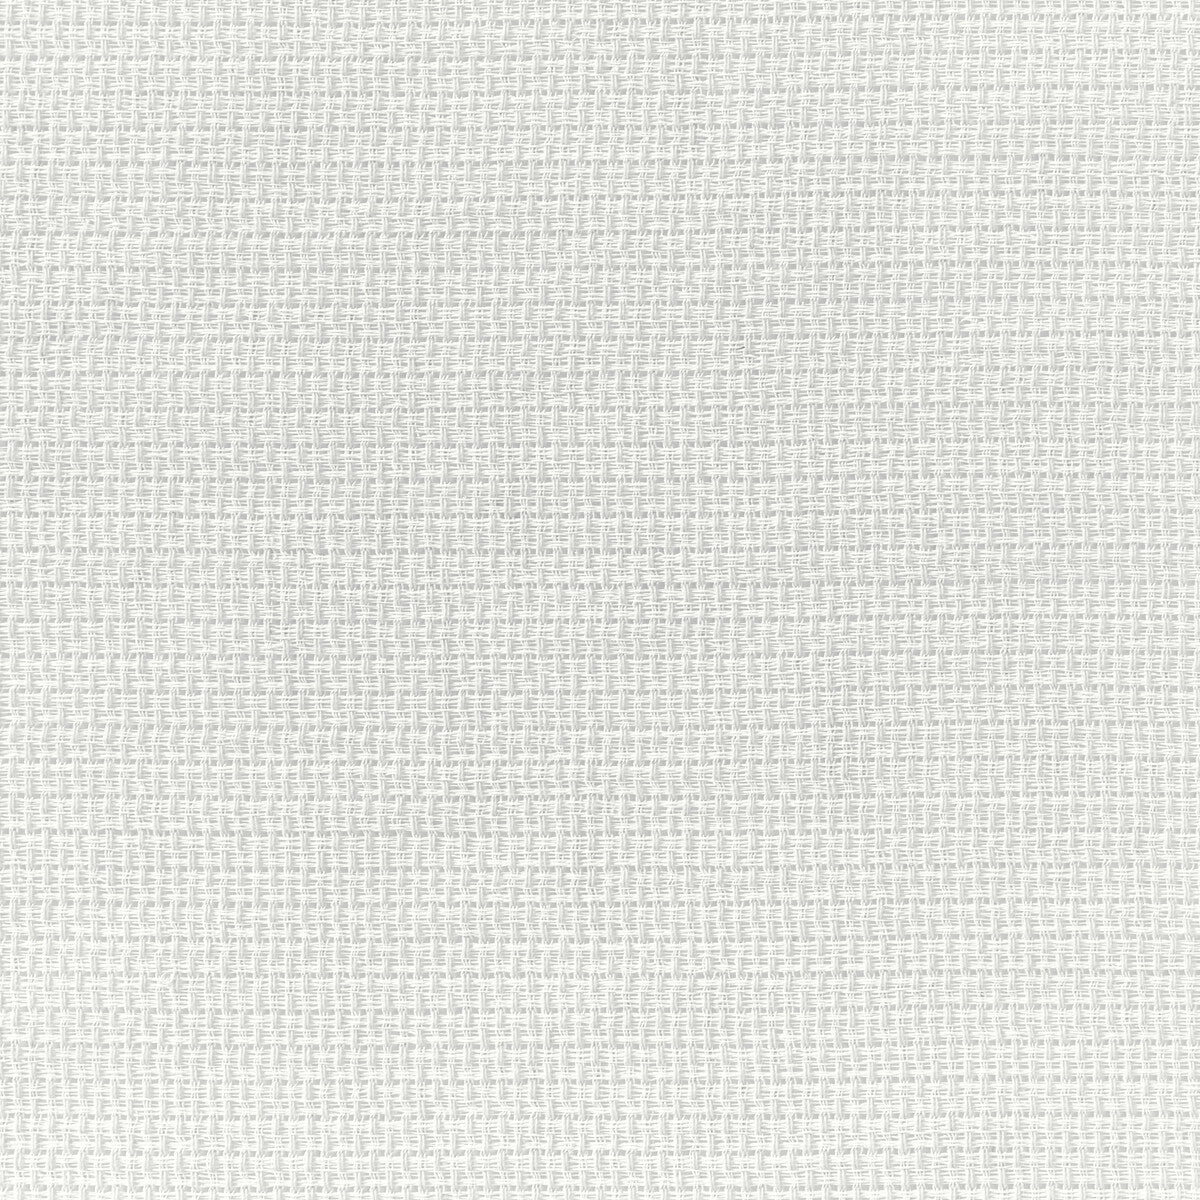 Kravet Basics fabric in 4882-101 color - pattern 4882.101.0 - by Kravet Basics